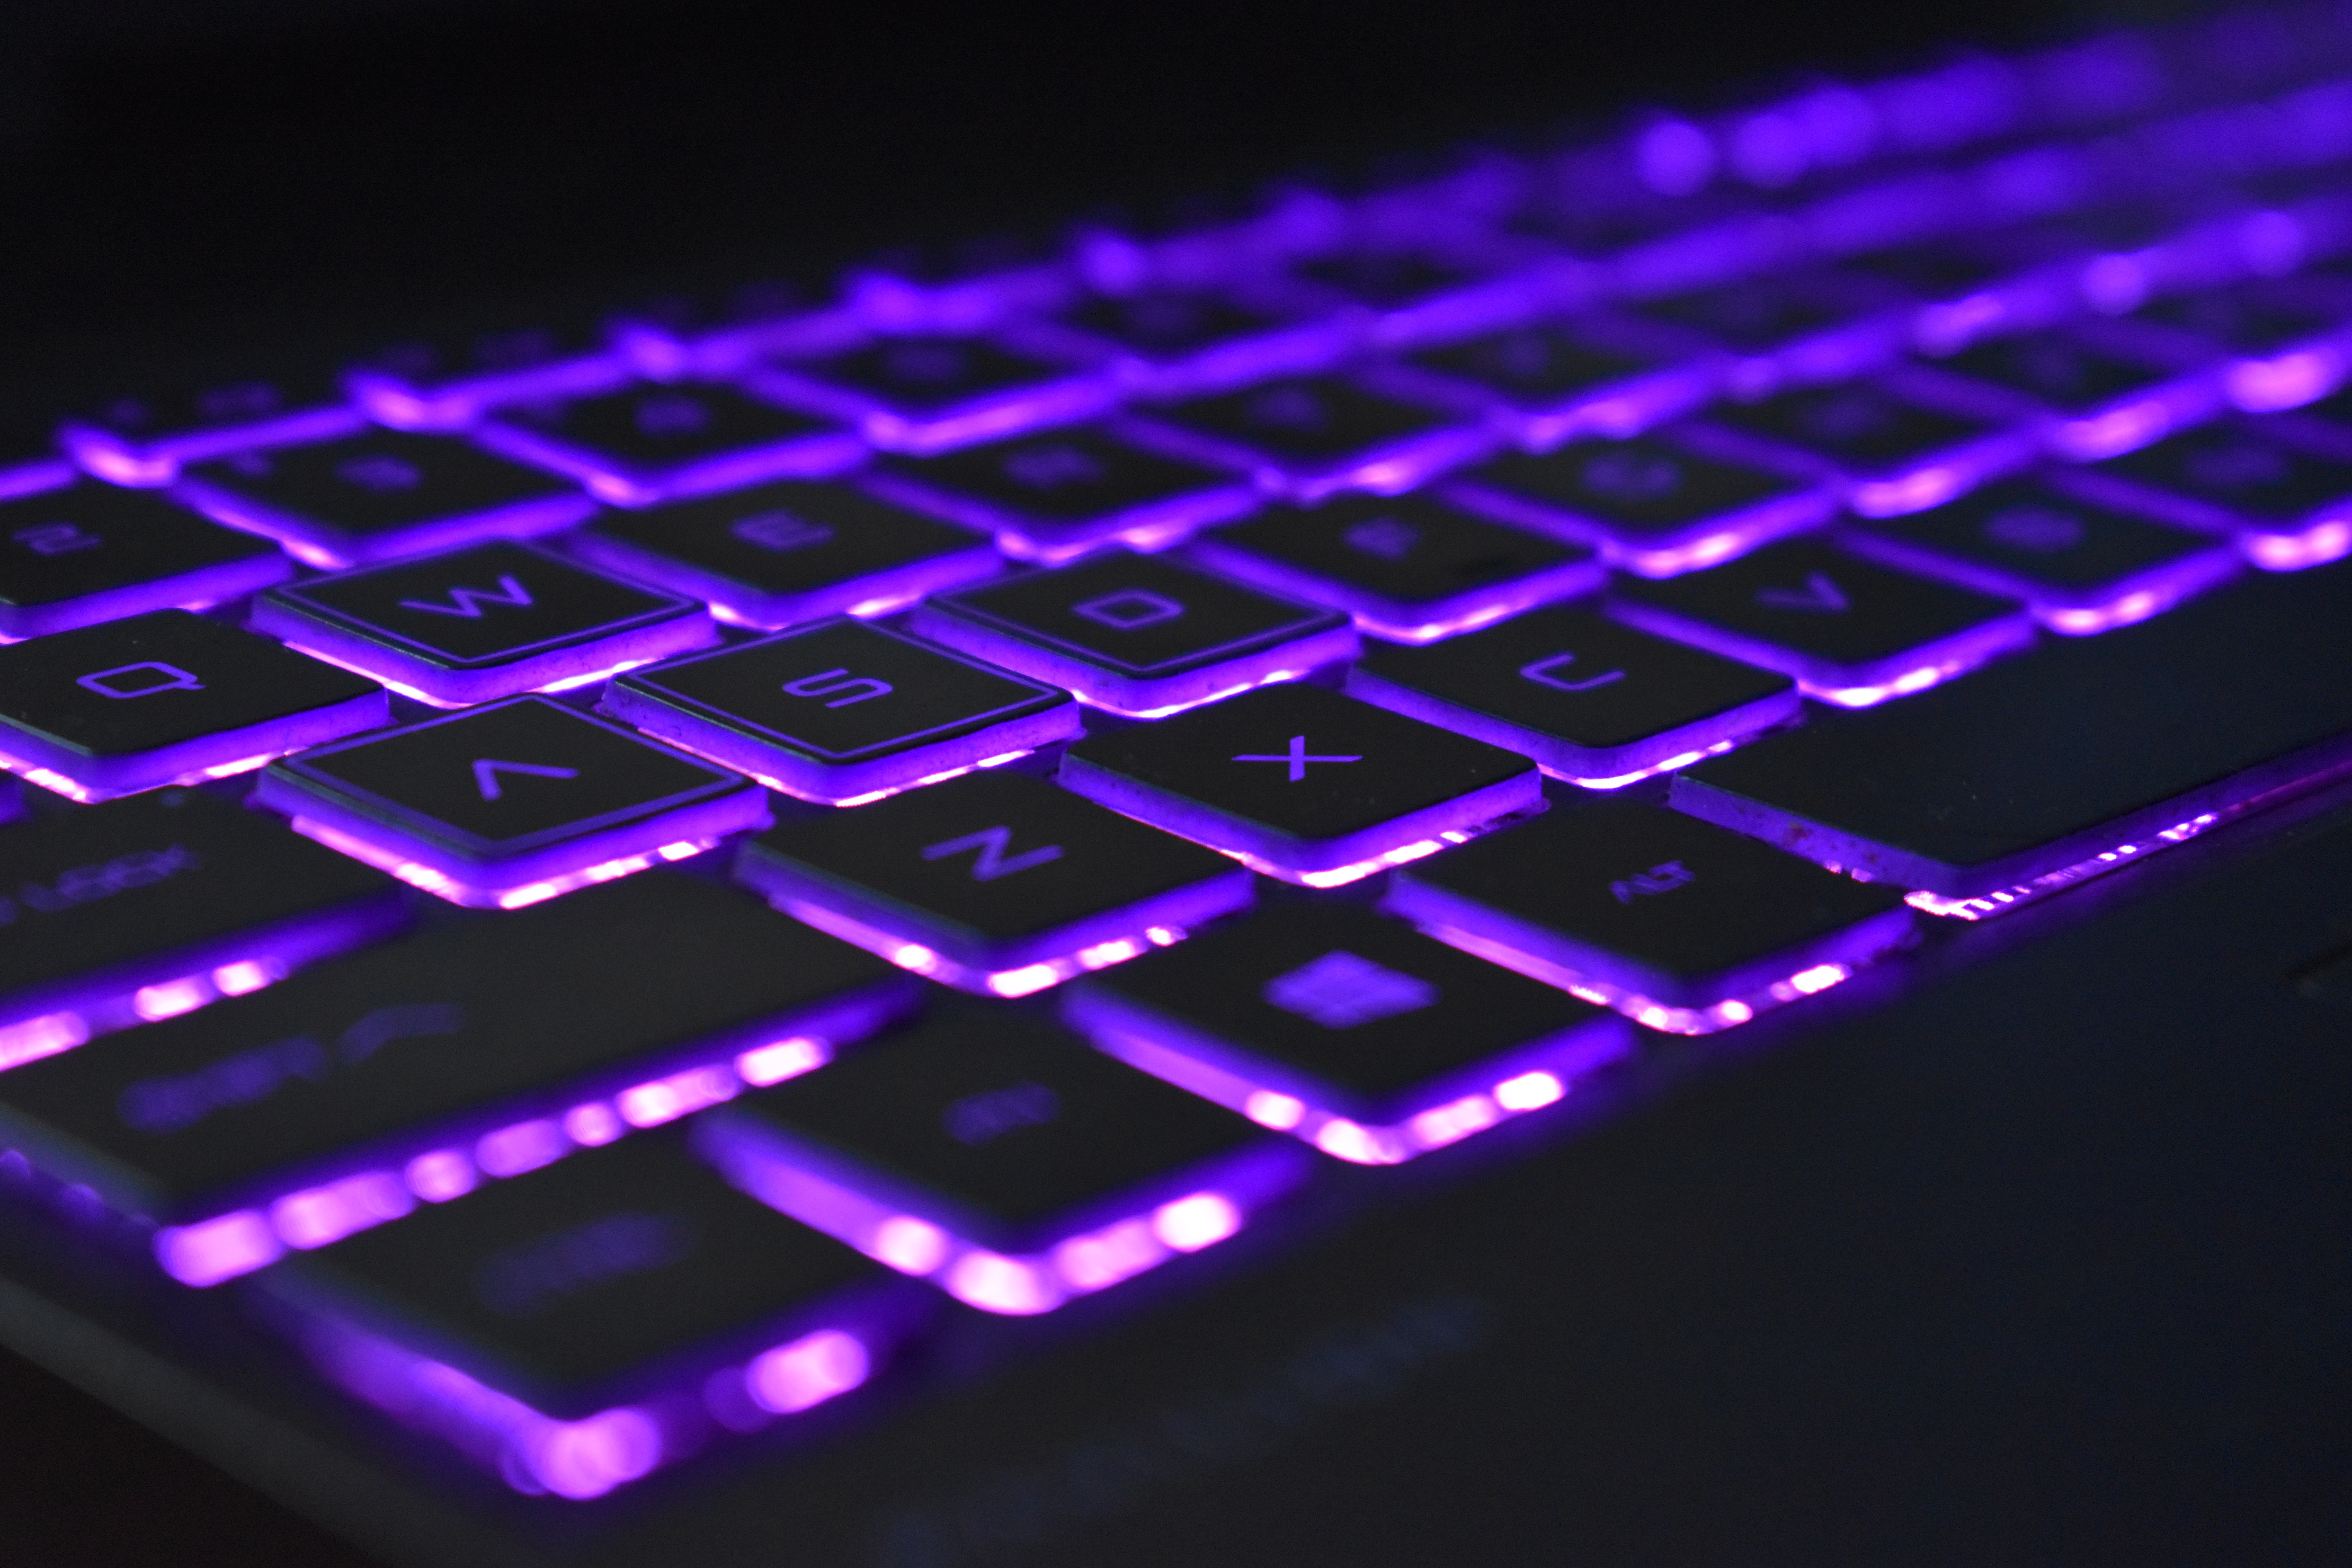 Keyboard Backlight Purple